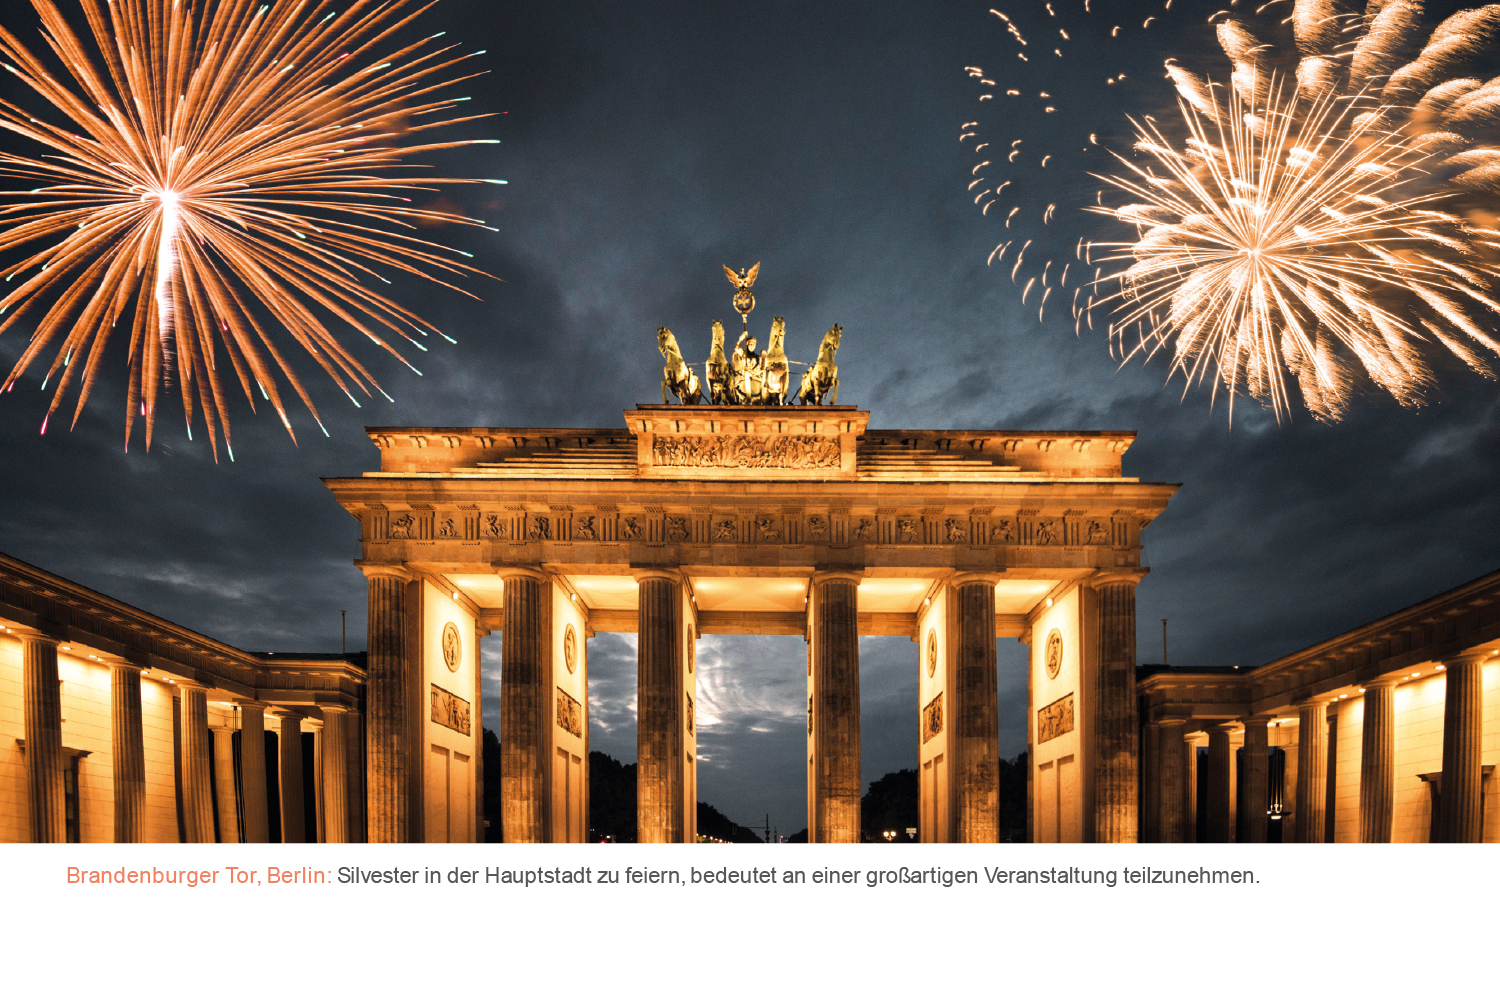 Bild: 9783965912816 | Happy Weekend in Deutschland - KUNTH Tischkalender 2024 | Kalender